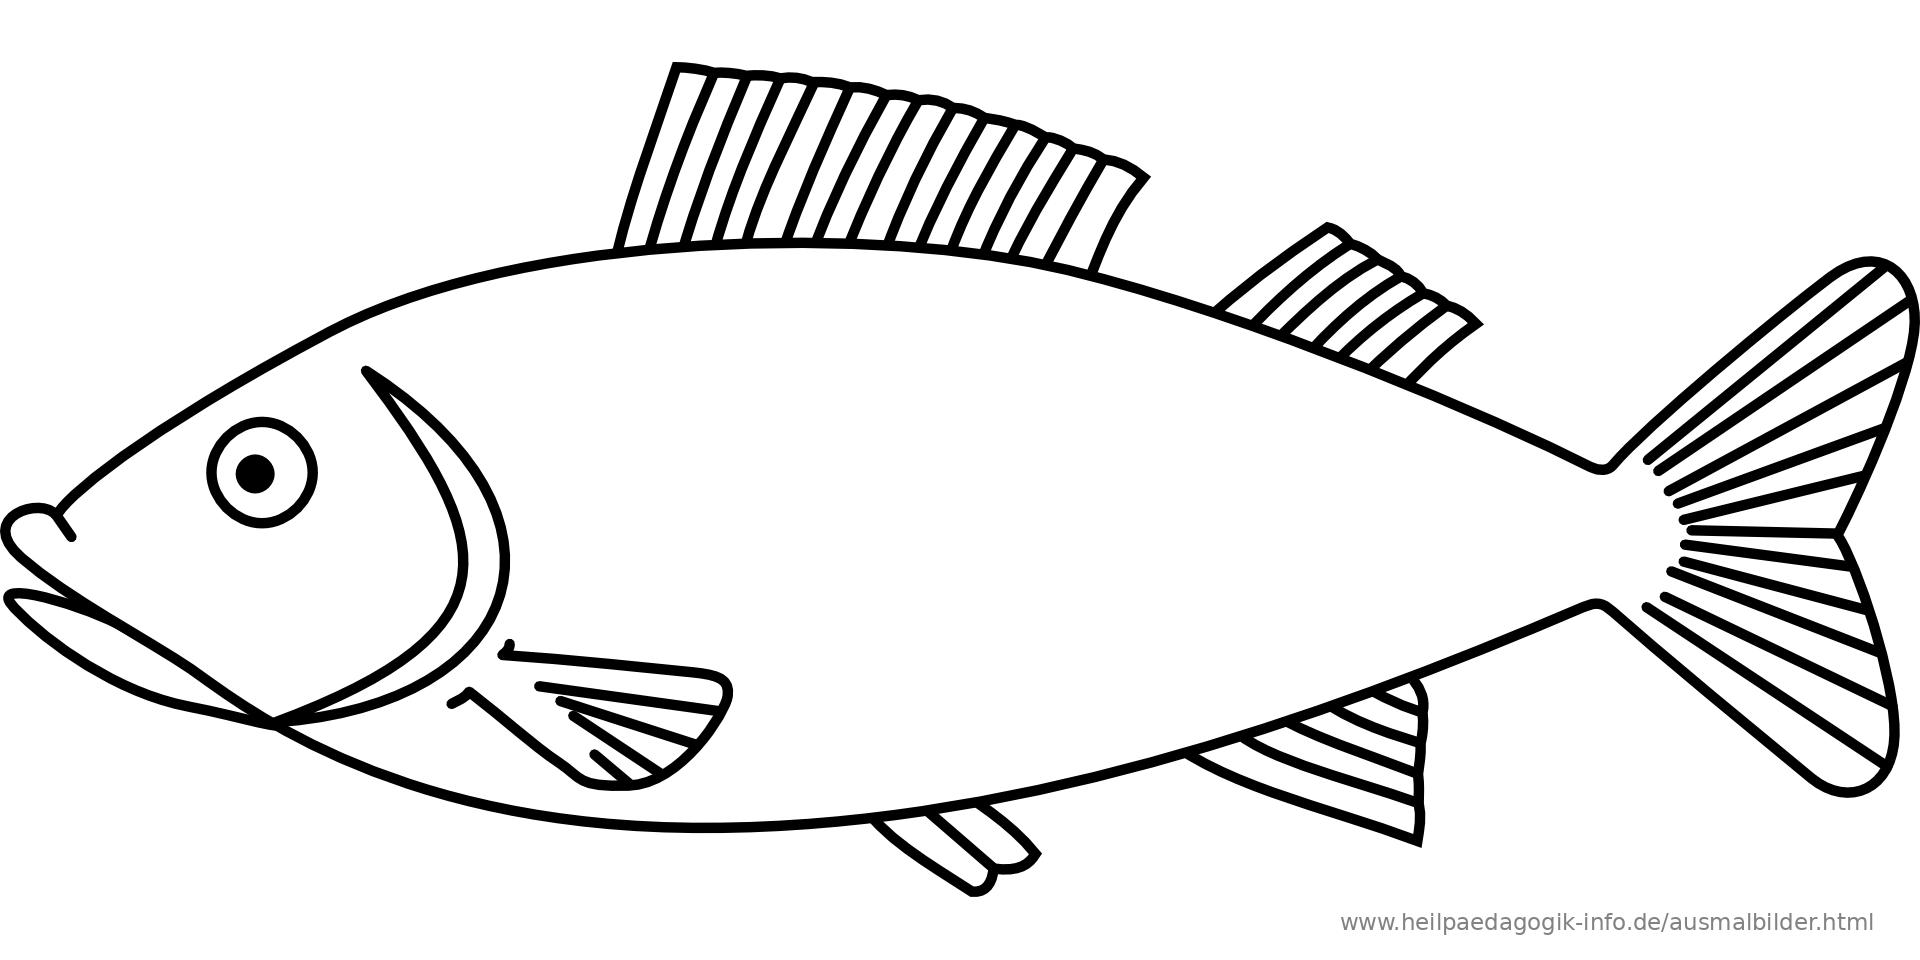 Ausmalbild Fisch Als PDF oder PNG anzeigen